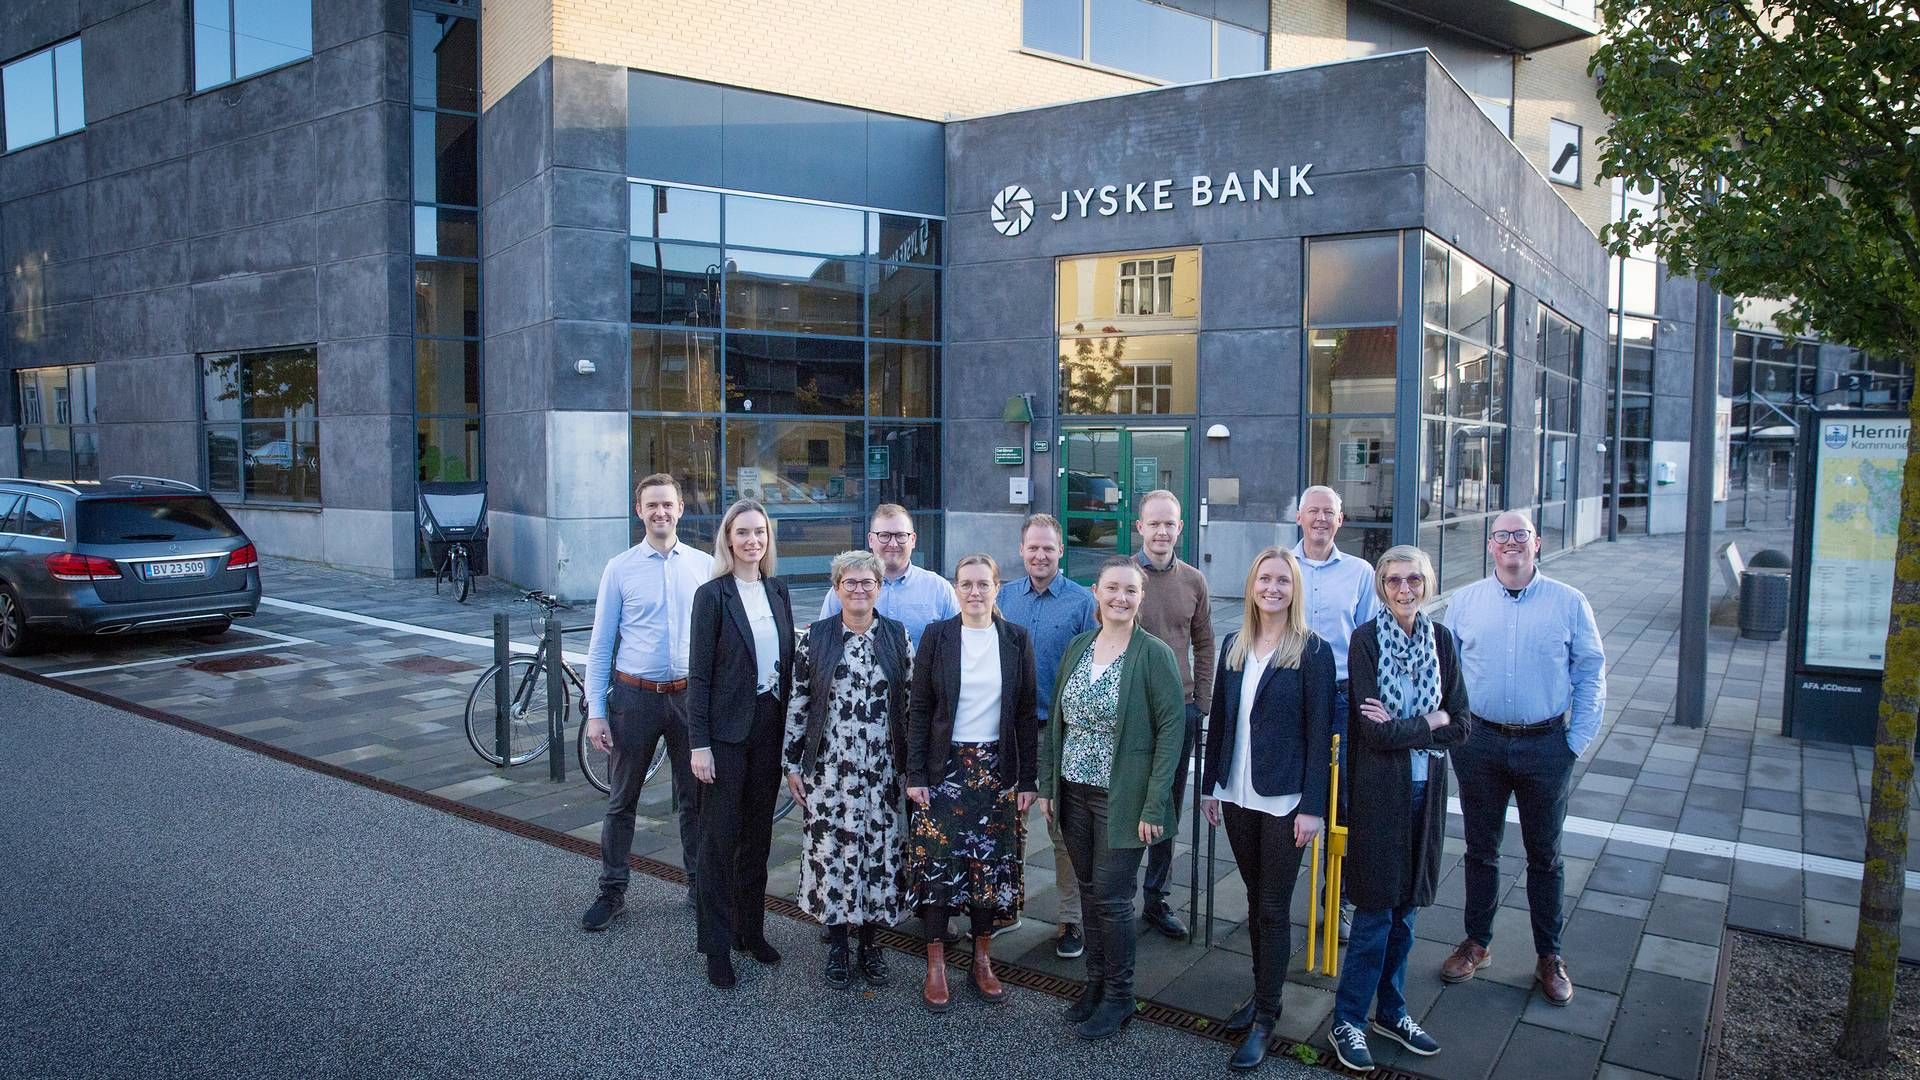 Sparekassen Thy overtager lokaler i Herning fra Jyske Bank. Medarbejderne (på billedet) flytter ind i foråret næste år. | Foto: Sparekassen Thy / pr